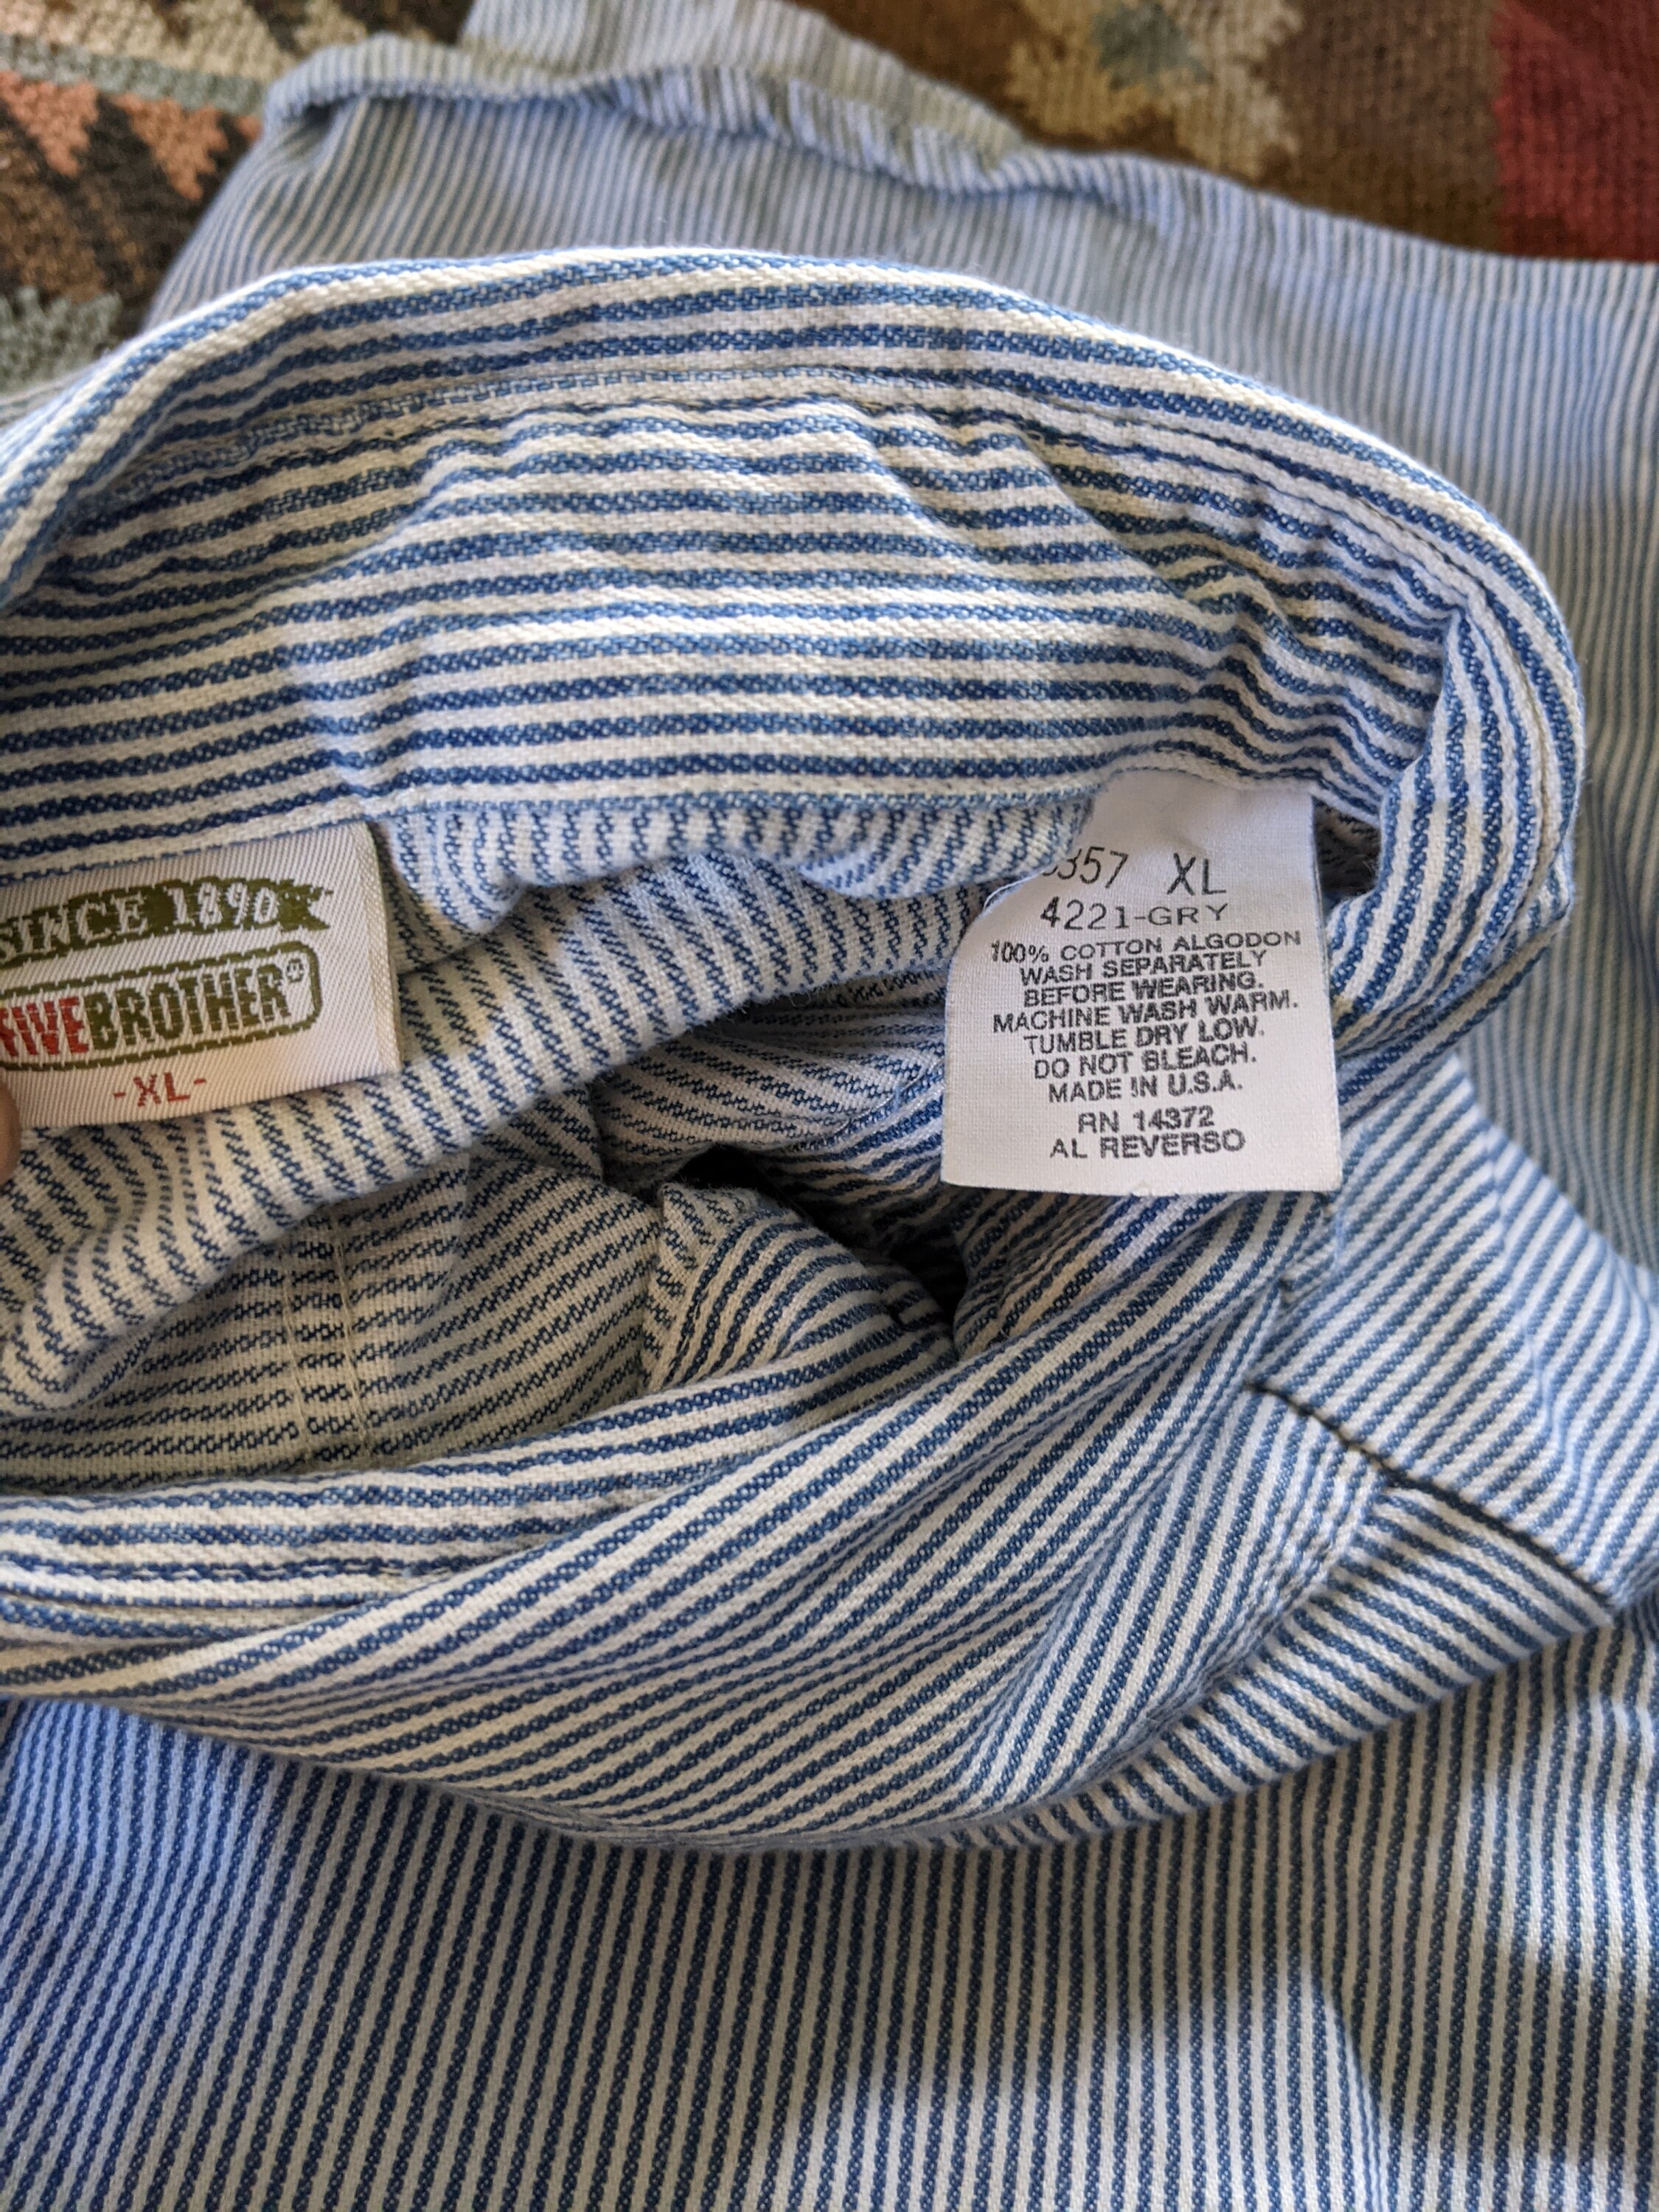 Railroad Stripe Button Down Shirt XL/XXL | Etsy